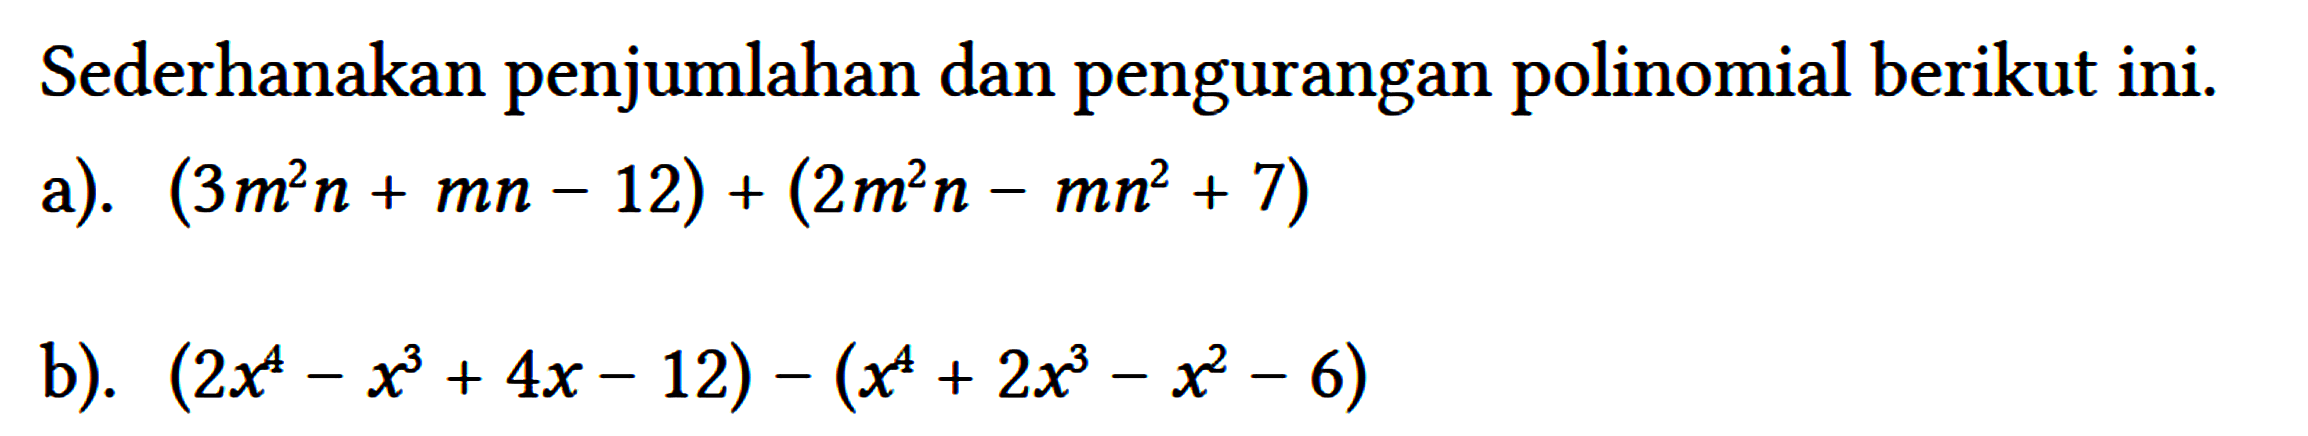 Sederhanakan penjumlahan dan pengurangan polinomial berikut ini.
 a). (3 m^(2) n+m n-12)+(2 m^(2) n-m n^(2)+7) 
 b). (2 x^(4)-x^(3)+4 x-12)-(x^(4)+2 x^(3)-x^(2)-6)